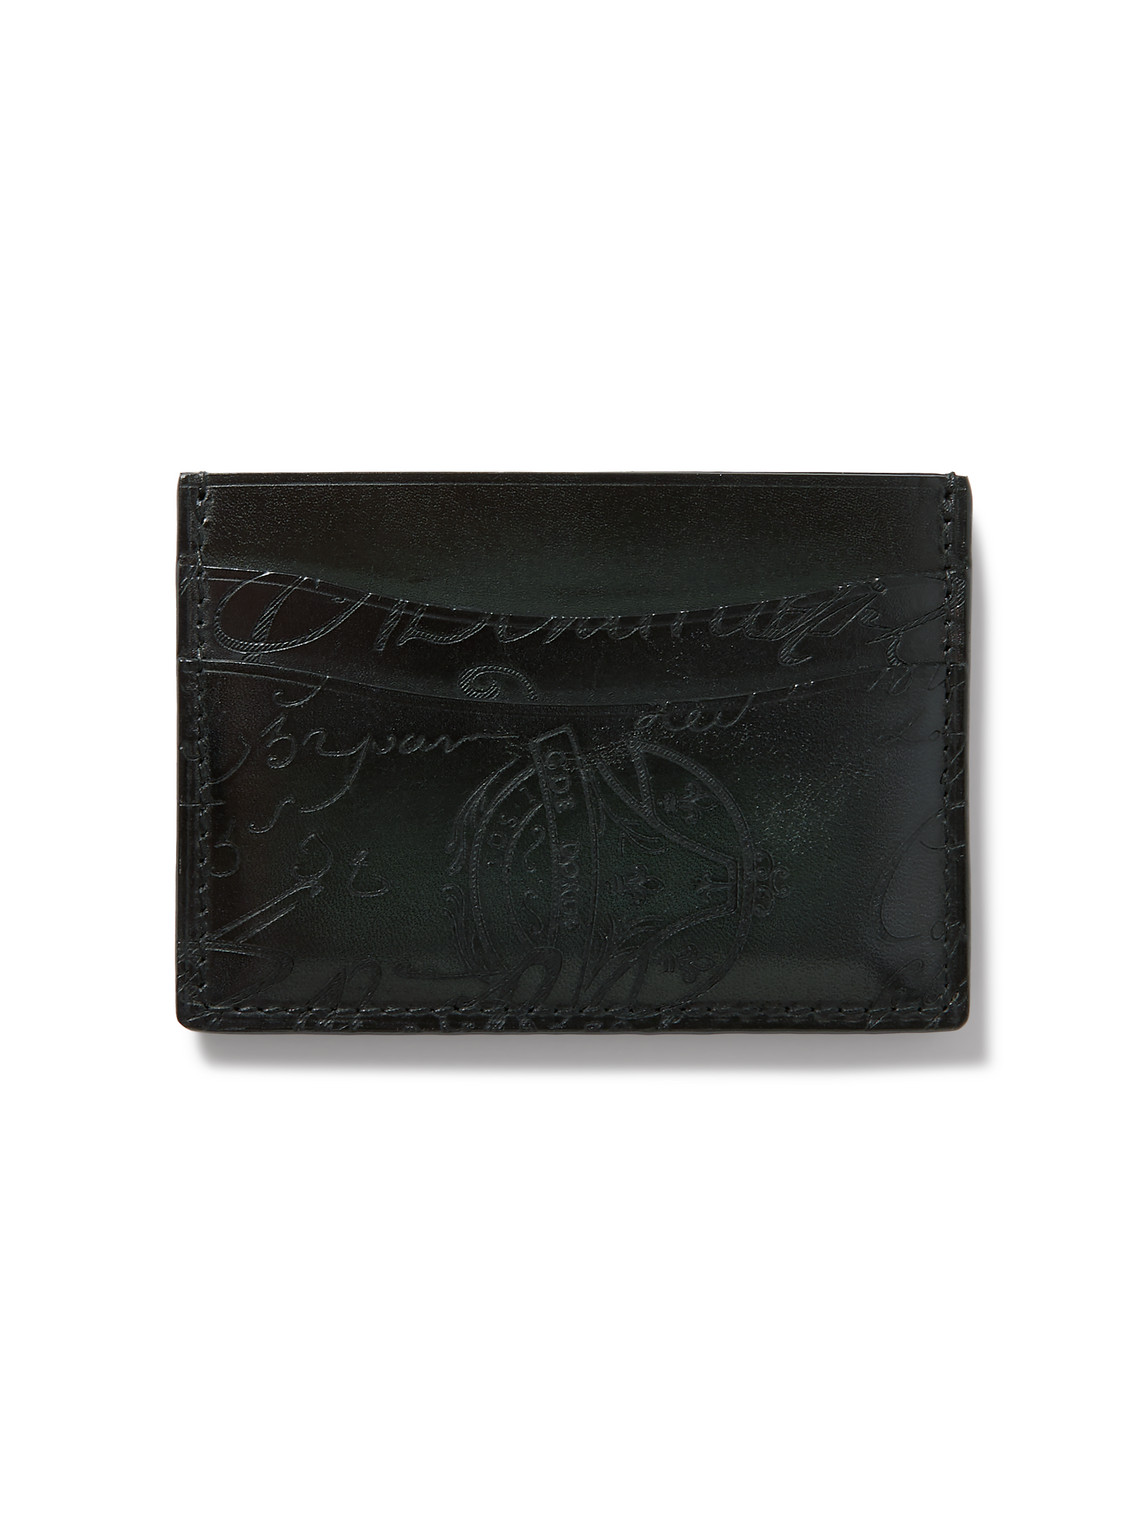 Berluti - Bambou Scritto Venezia Leather Cardholder - Men - Green von Berluti